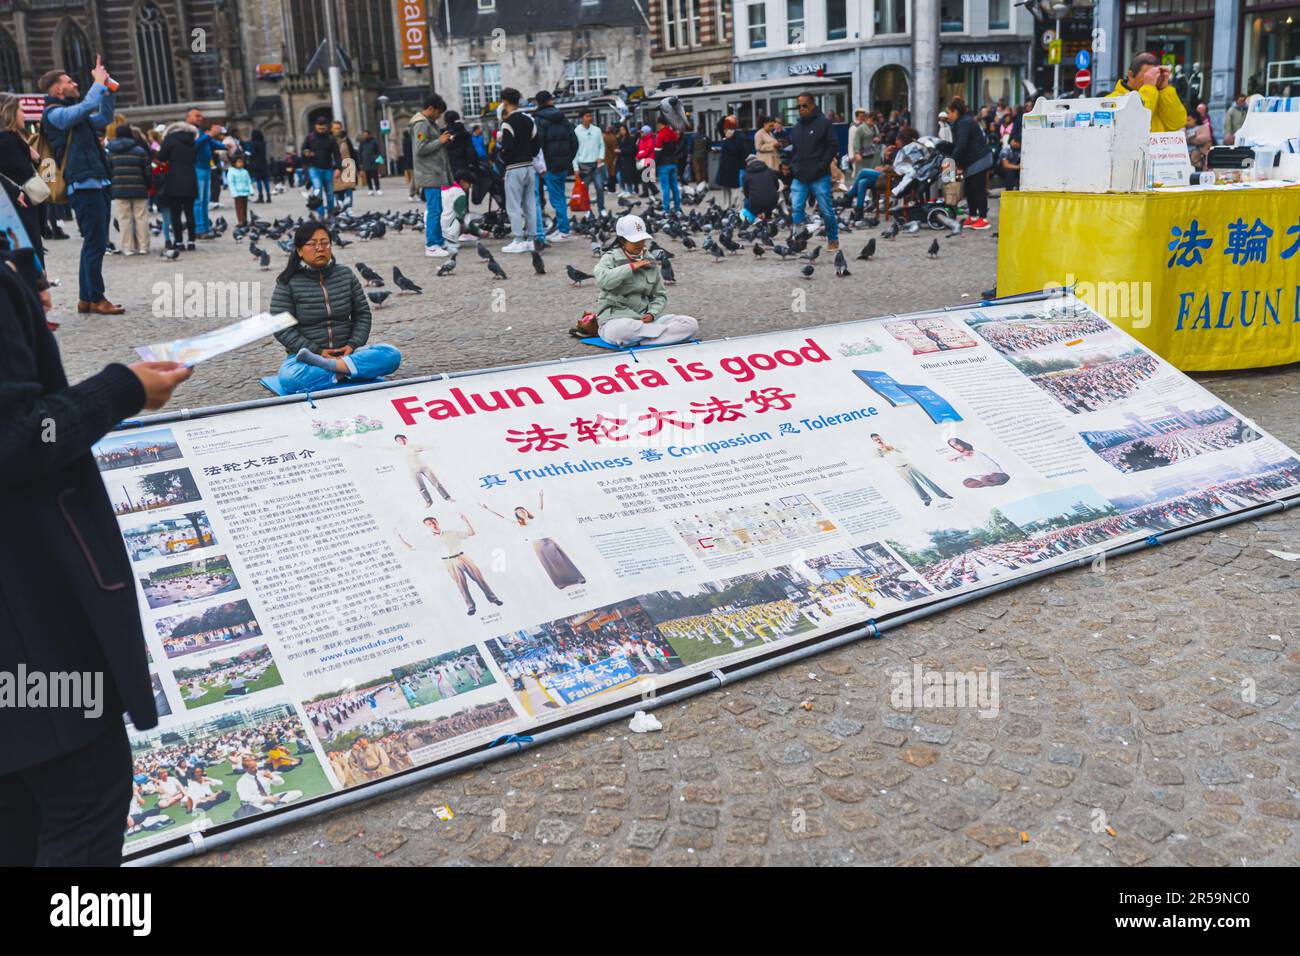 04.18.2023 Amsterdam, Países Bajos. Manifestantes en las calles de Amsterdam. La protesta al aire libre combate la violencia y la falta de igualdad. Foto de alta calidad Foto de stock